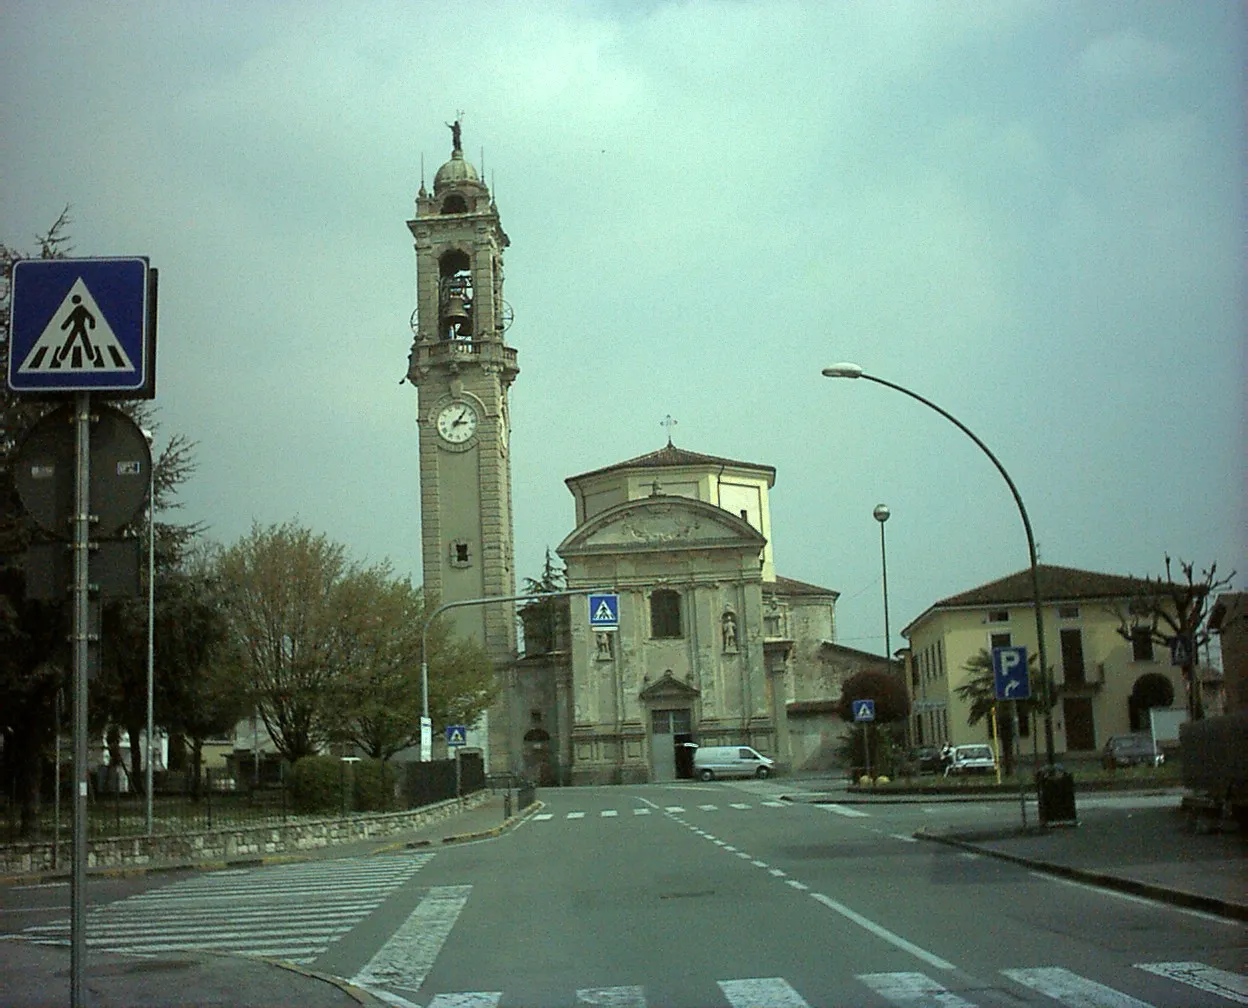 Bild von Lombardei